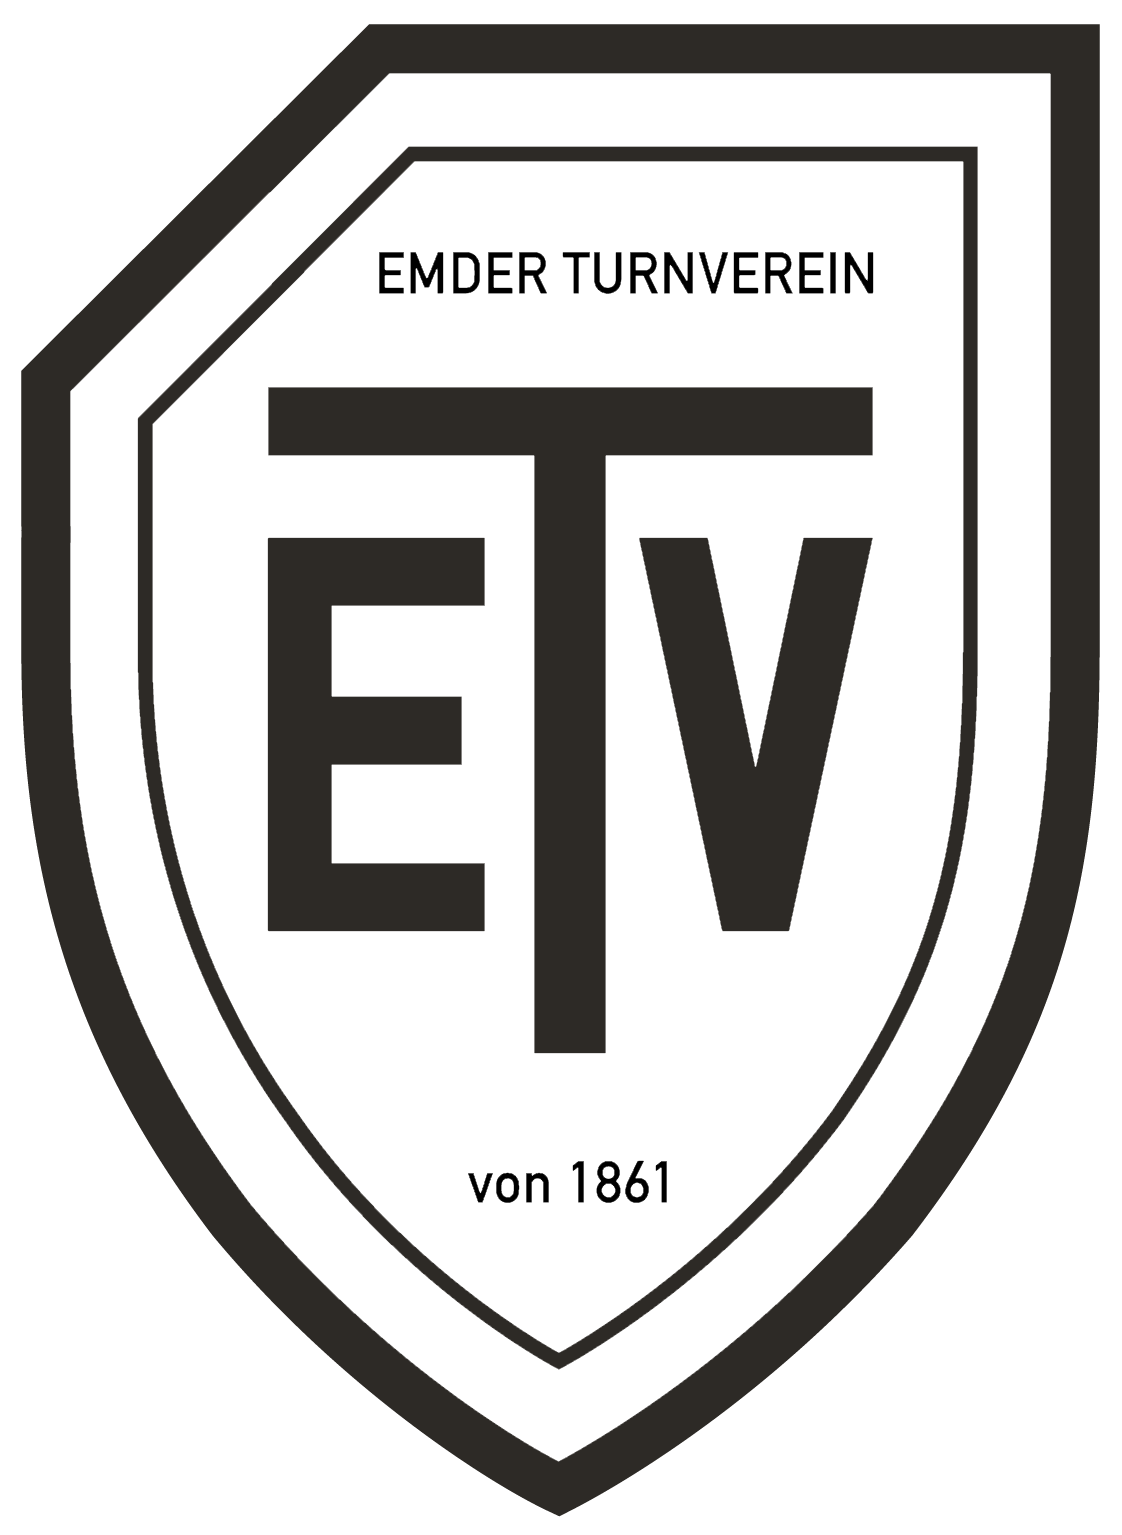 Emder Turnverein